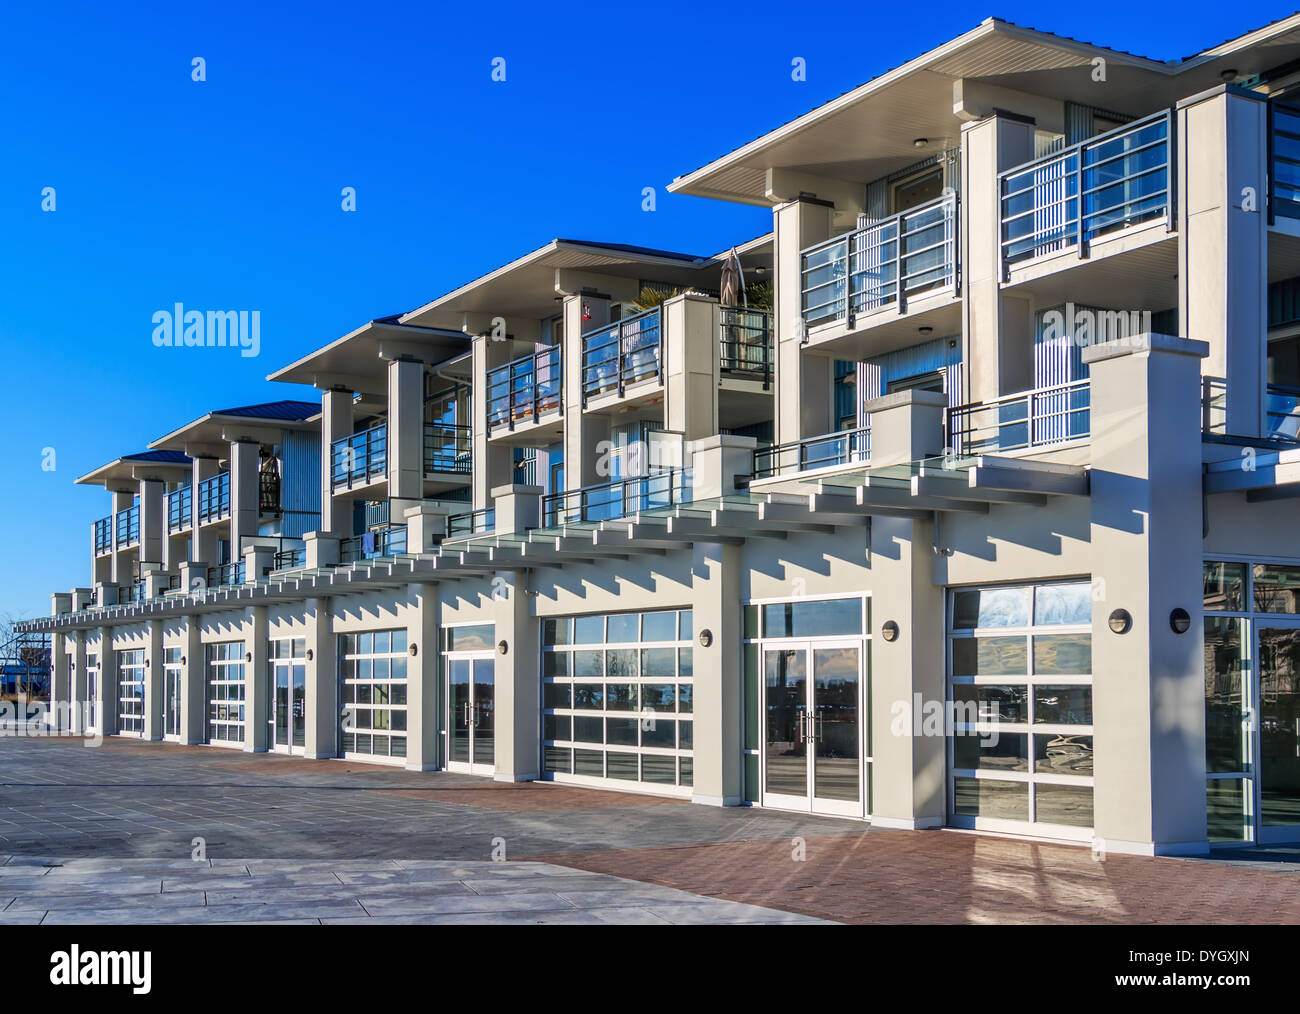 Dettagli architettonici del moderno edificio di appartamenti. Richmond, BC, Canada Foto Stock